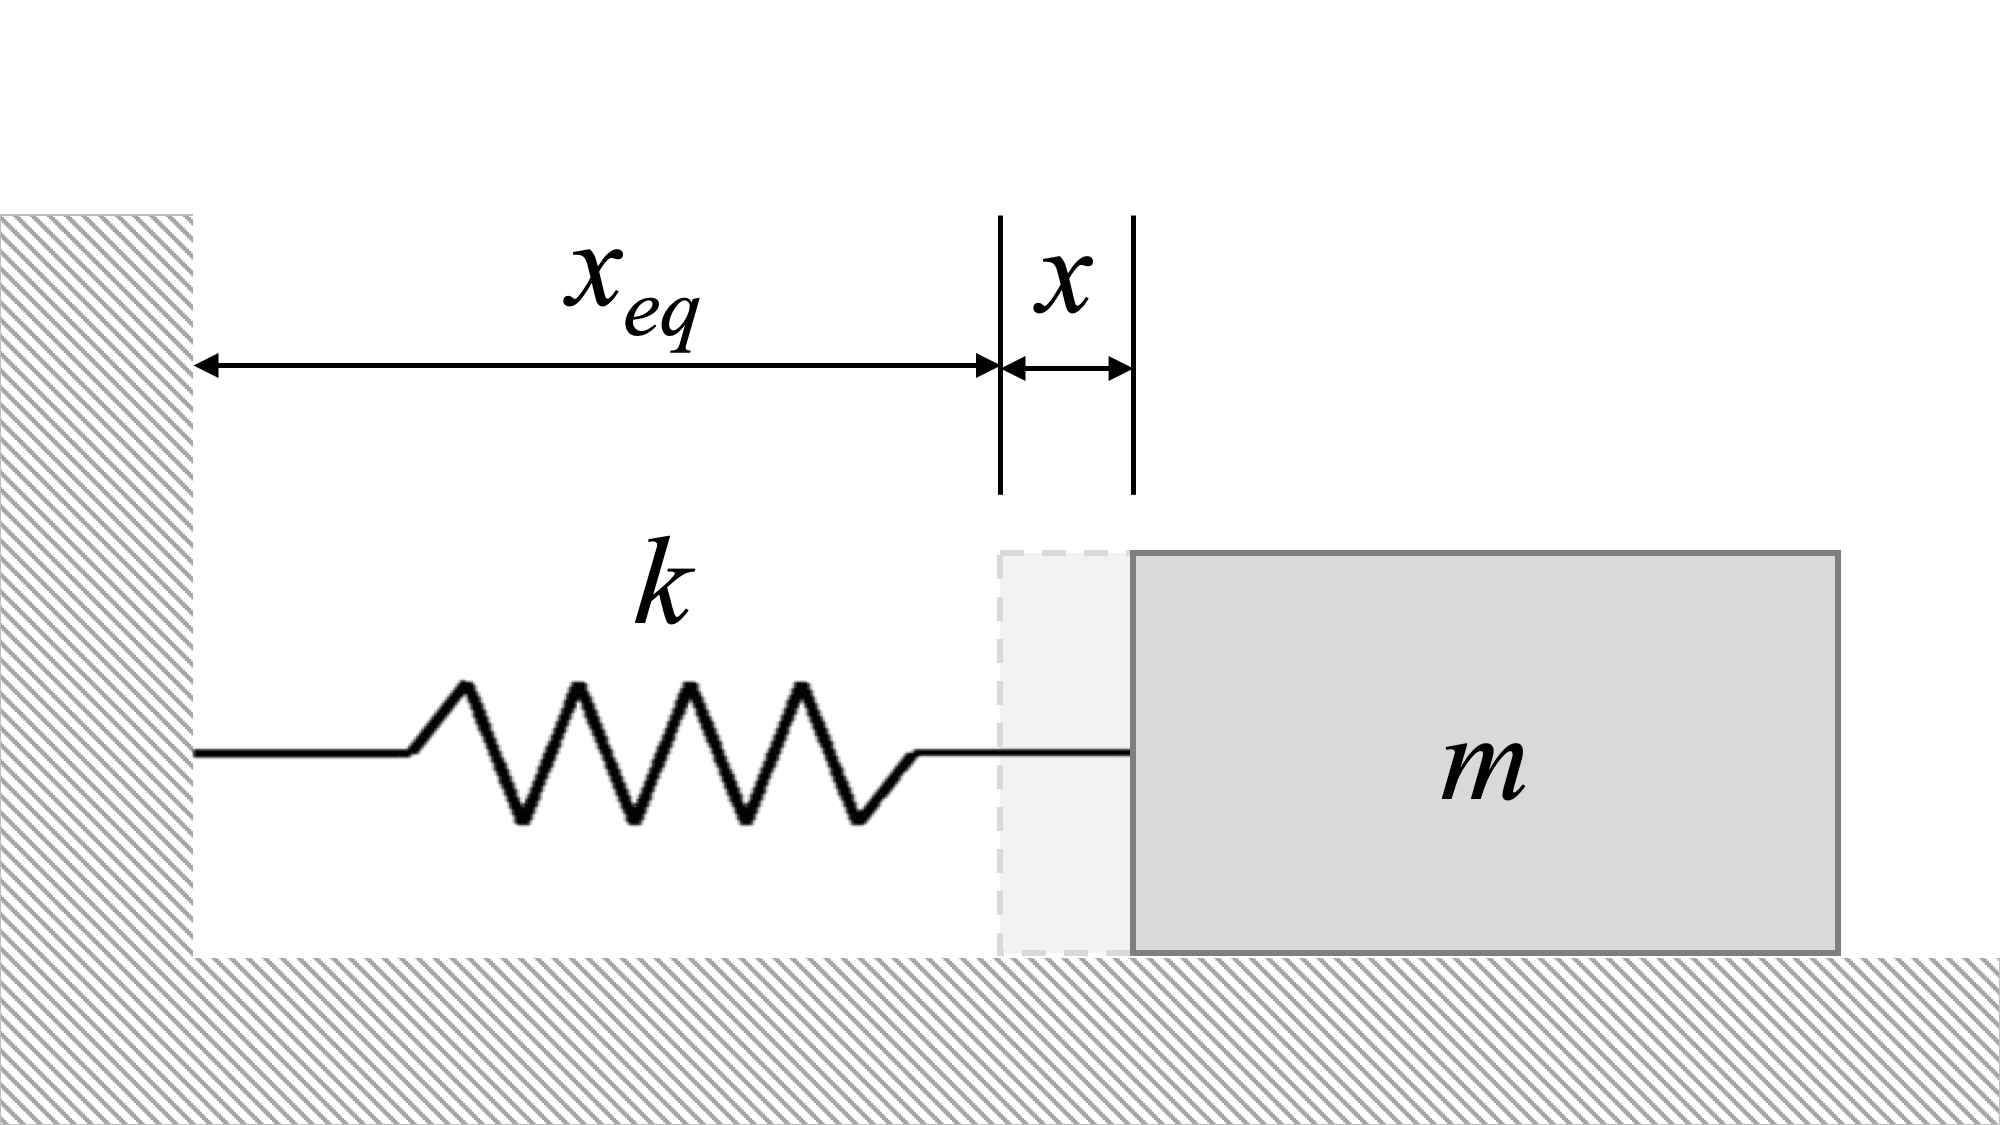 El sistema de la Figura 1 anterior tiene la masa movida una pequeña distancia x hacia la derecha desde su posición de equilibrio.